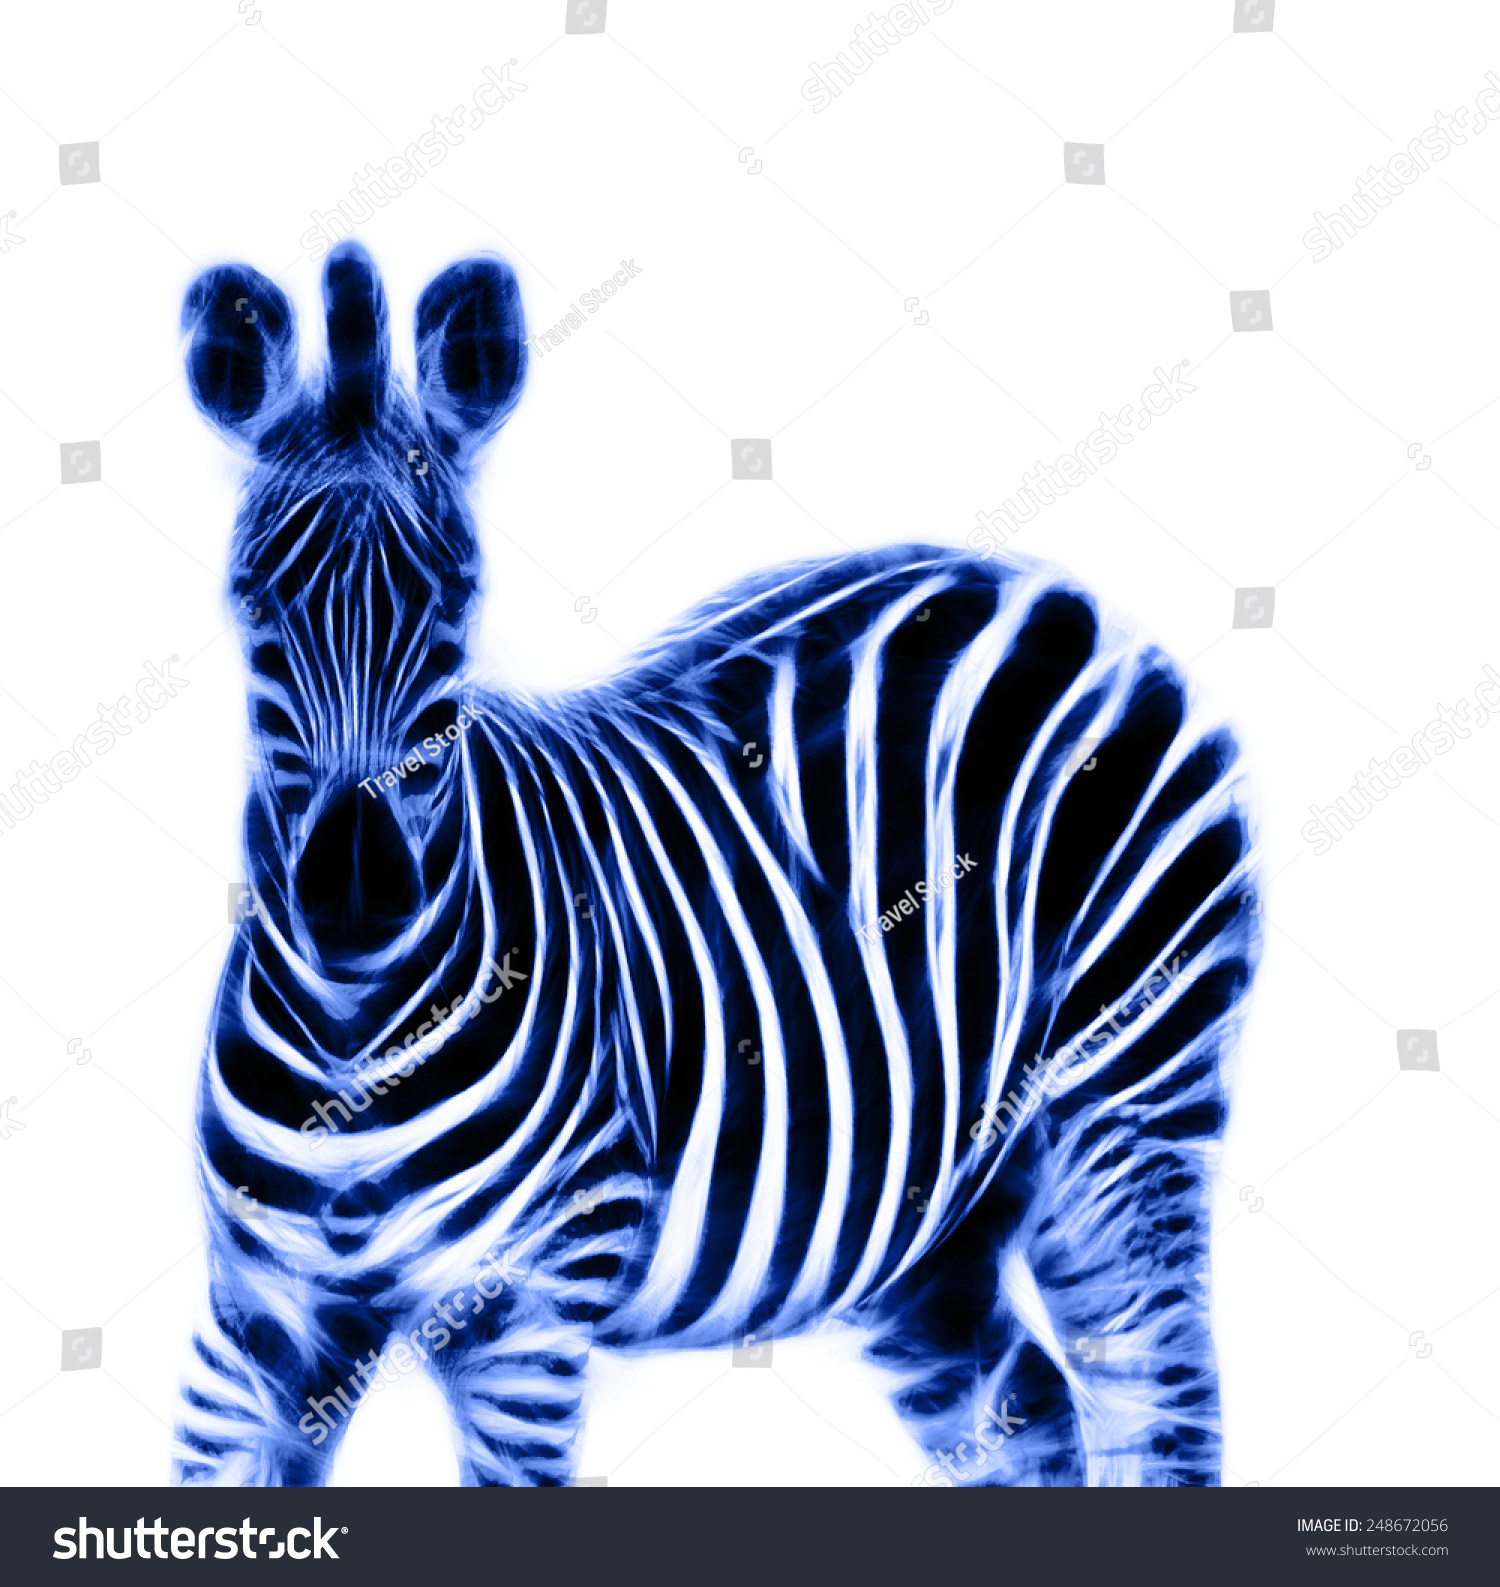 Fractal Illustration Zebra Stock Illustration 248672056 - Shutterstock